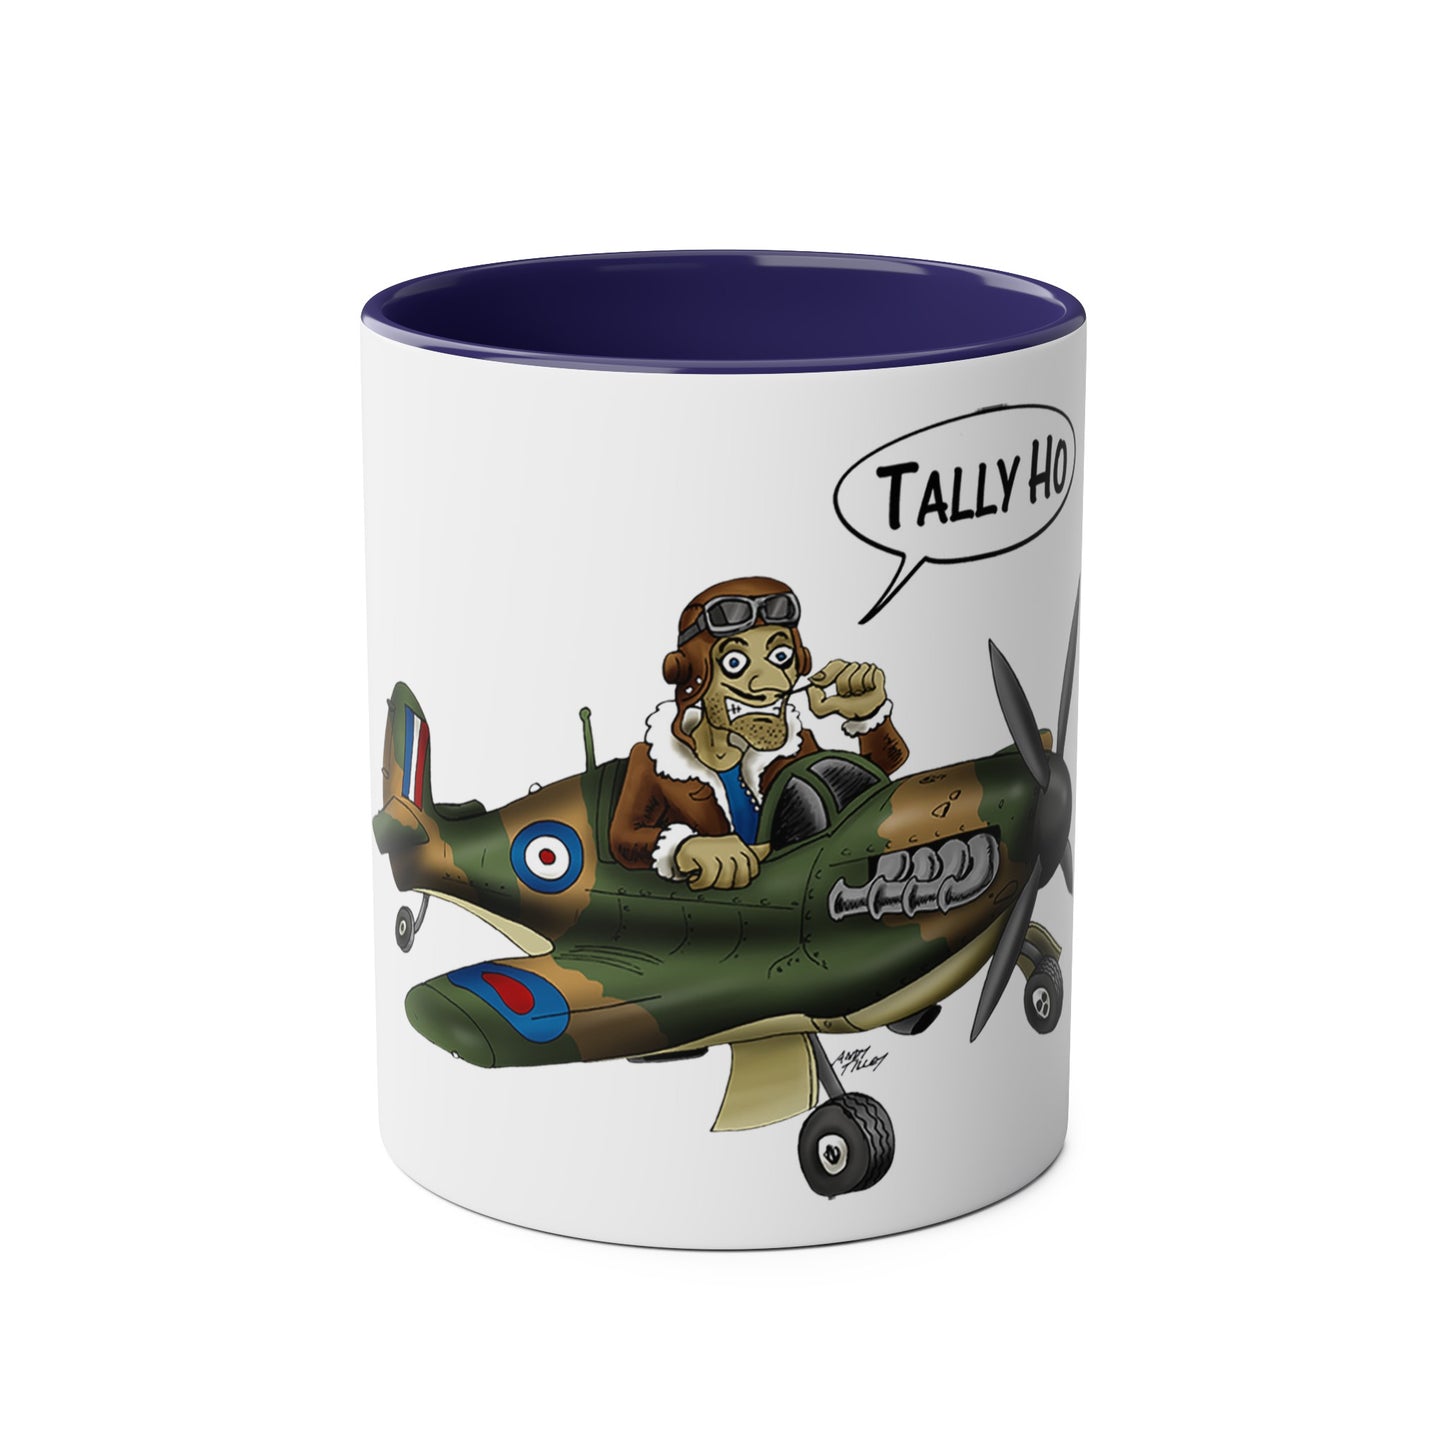 Tally Ho Spitfire Two-Tone Coffee Mugs, 11oz